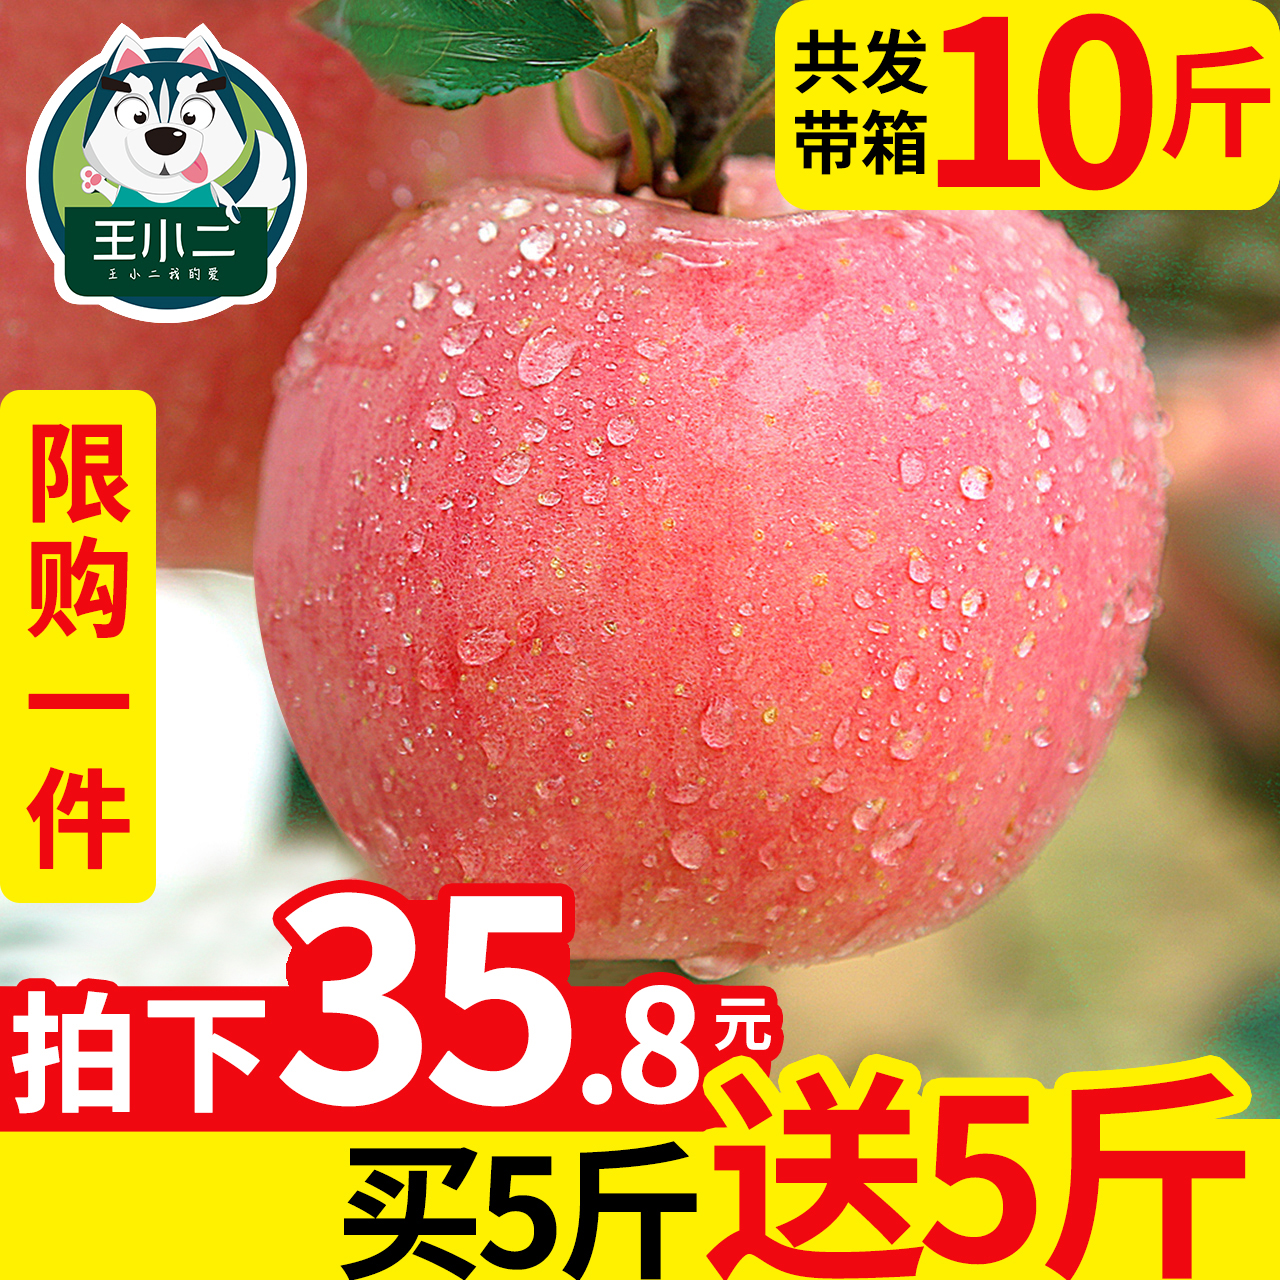 【买一送一】红富士苹果水果10斤带箱新鲜包邮当季丑苹果整箱吃的